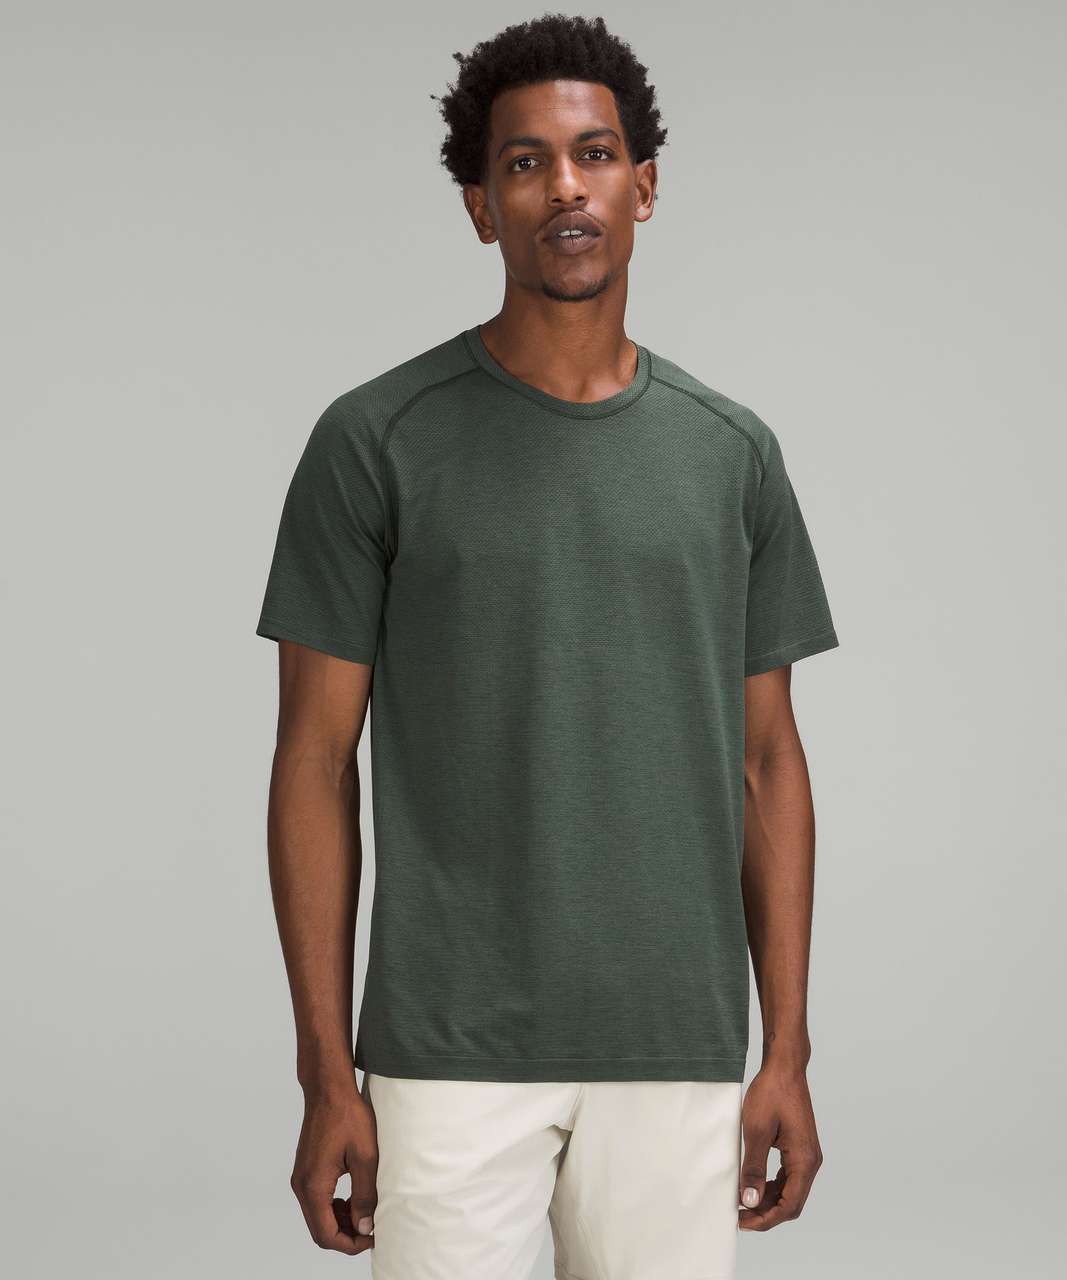 Lululemon Metal Vent Tech Short Sleeve Shirt 2.0, Golf Equipment: Clubs,  Balls, Bags